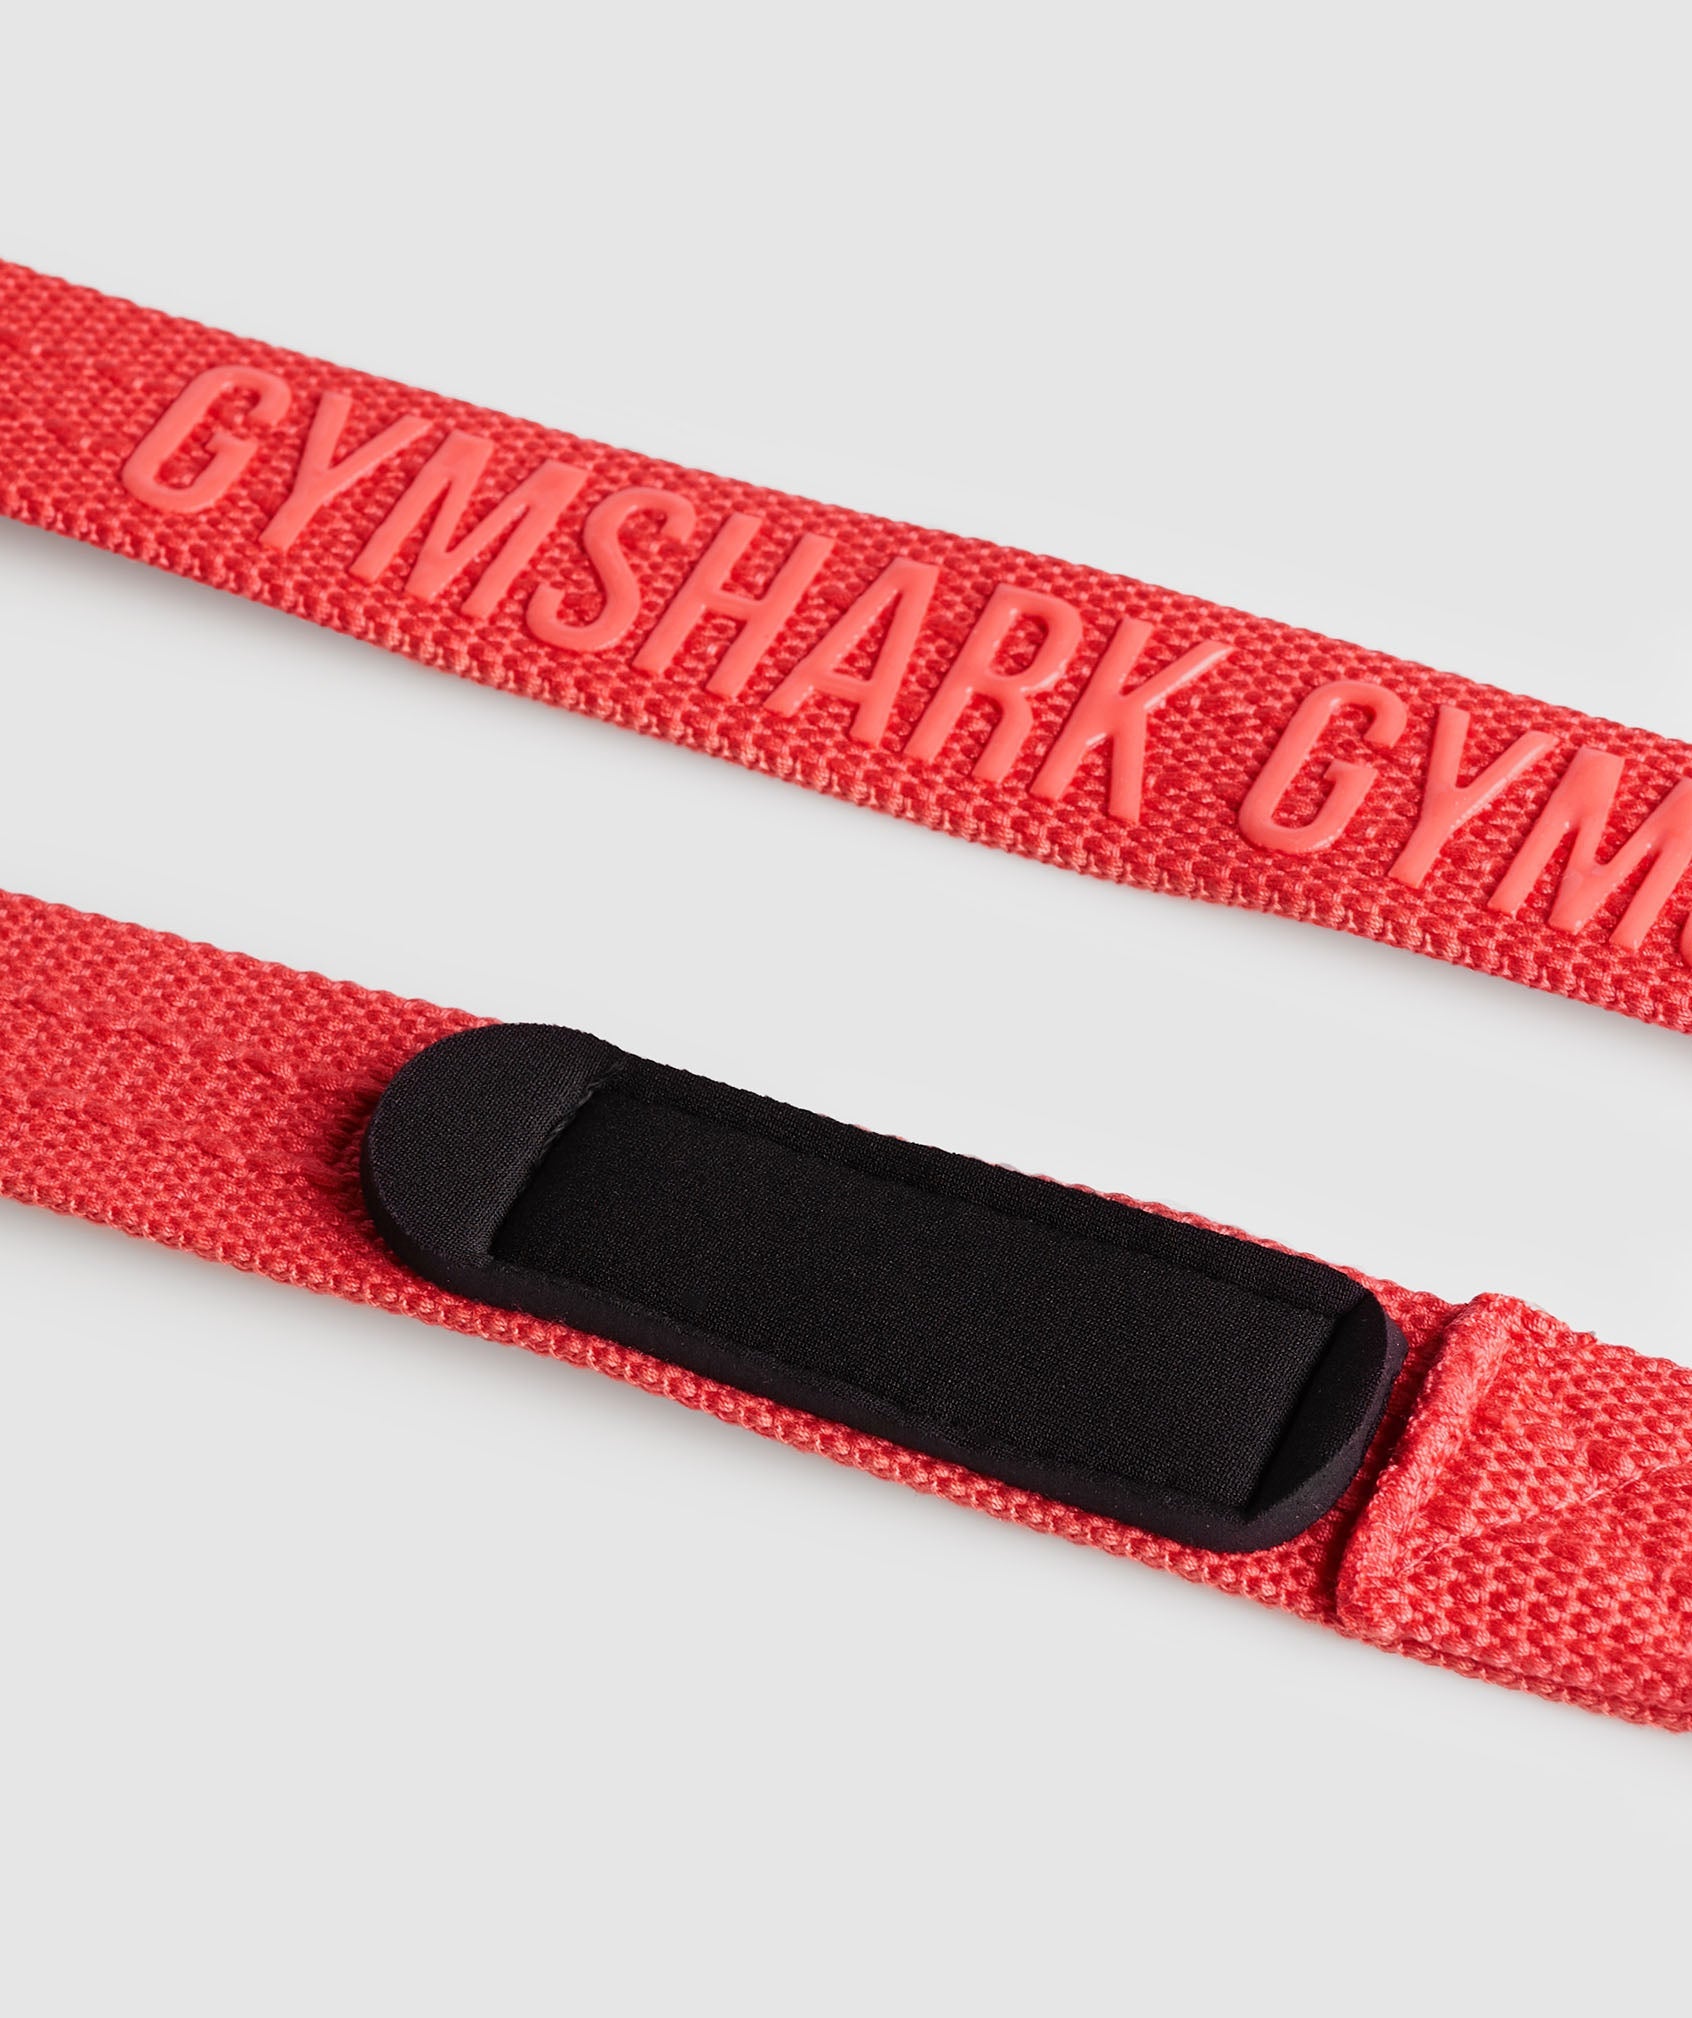 Gymshark, Other, Gymshark Wrist Straps